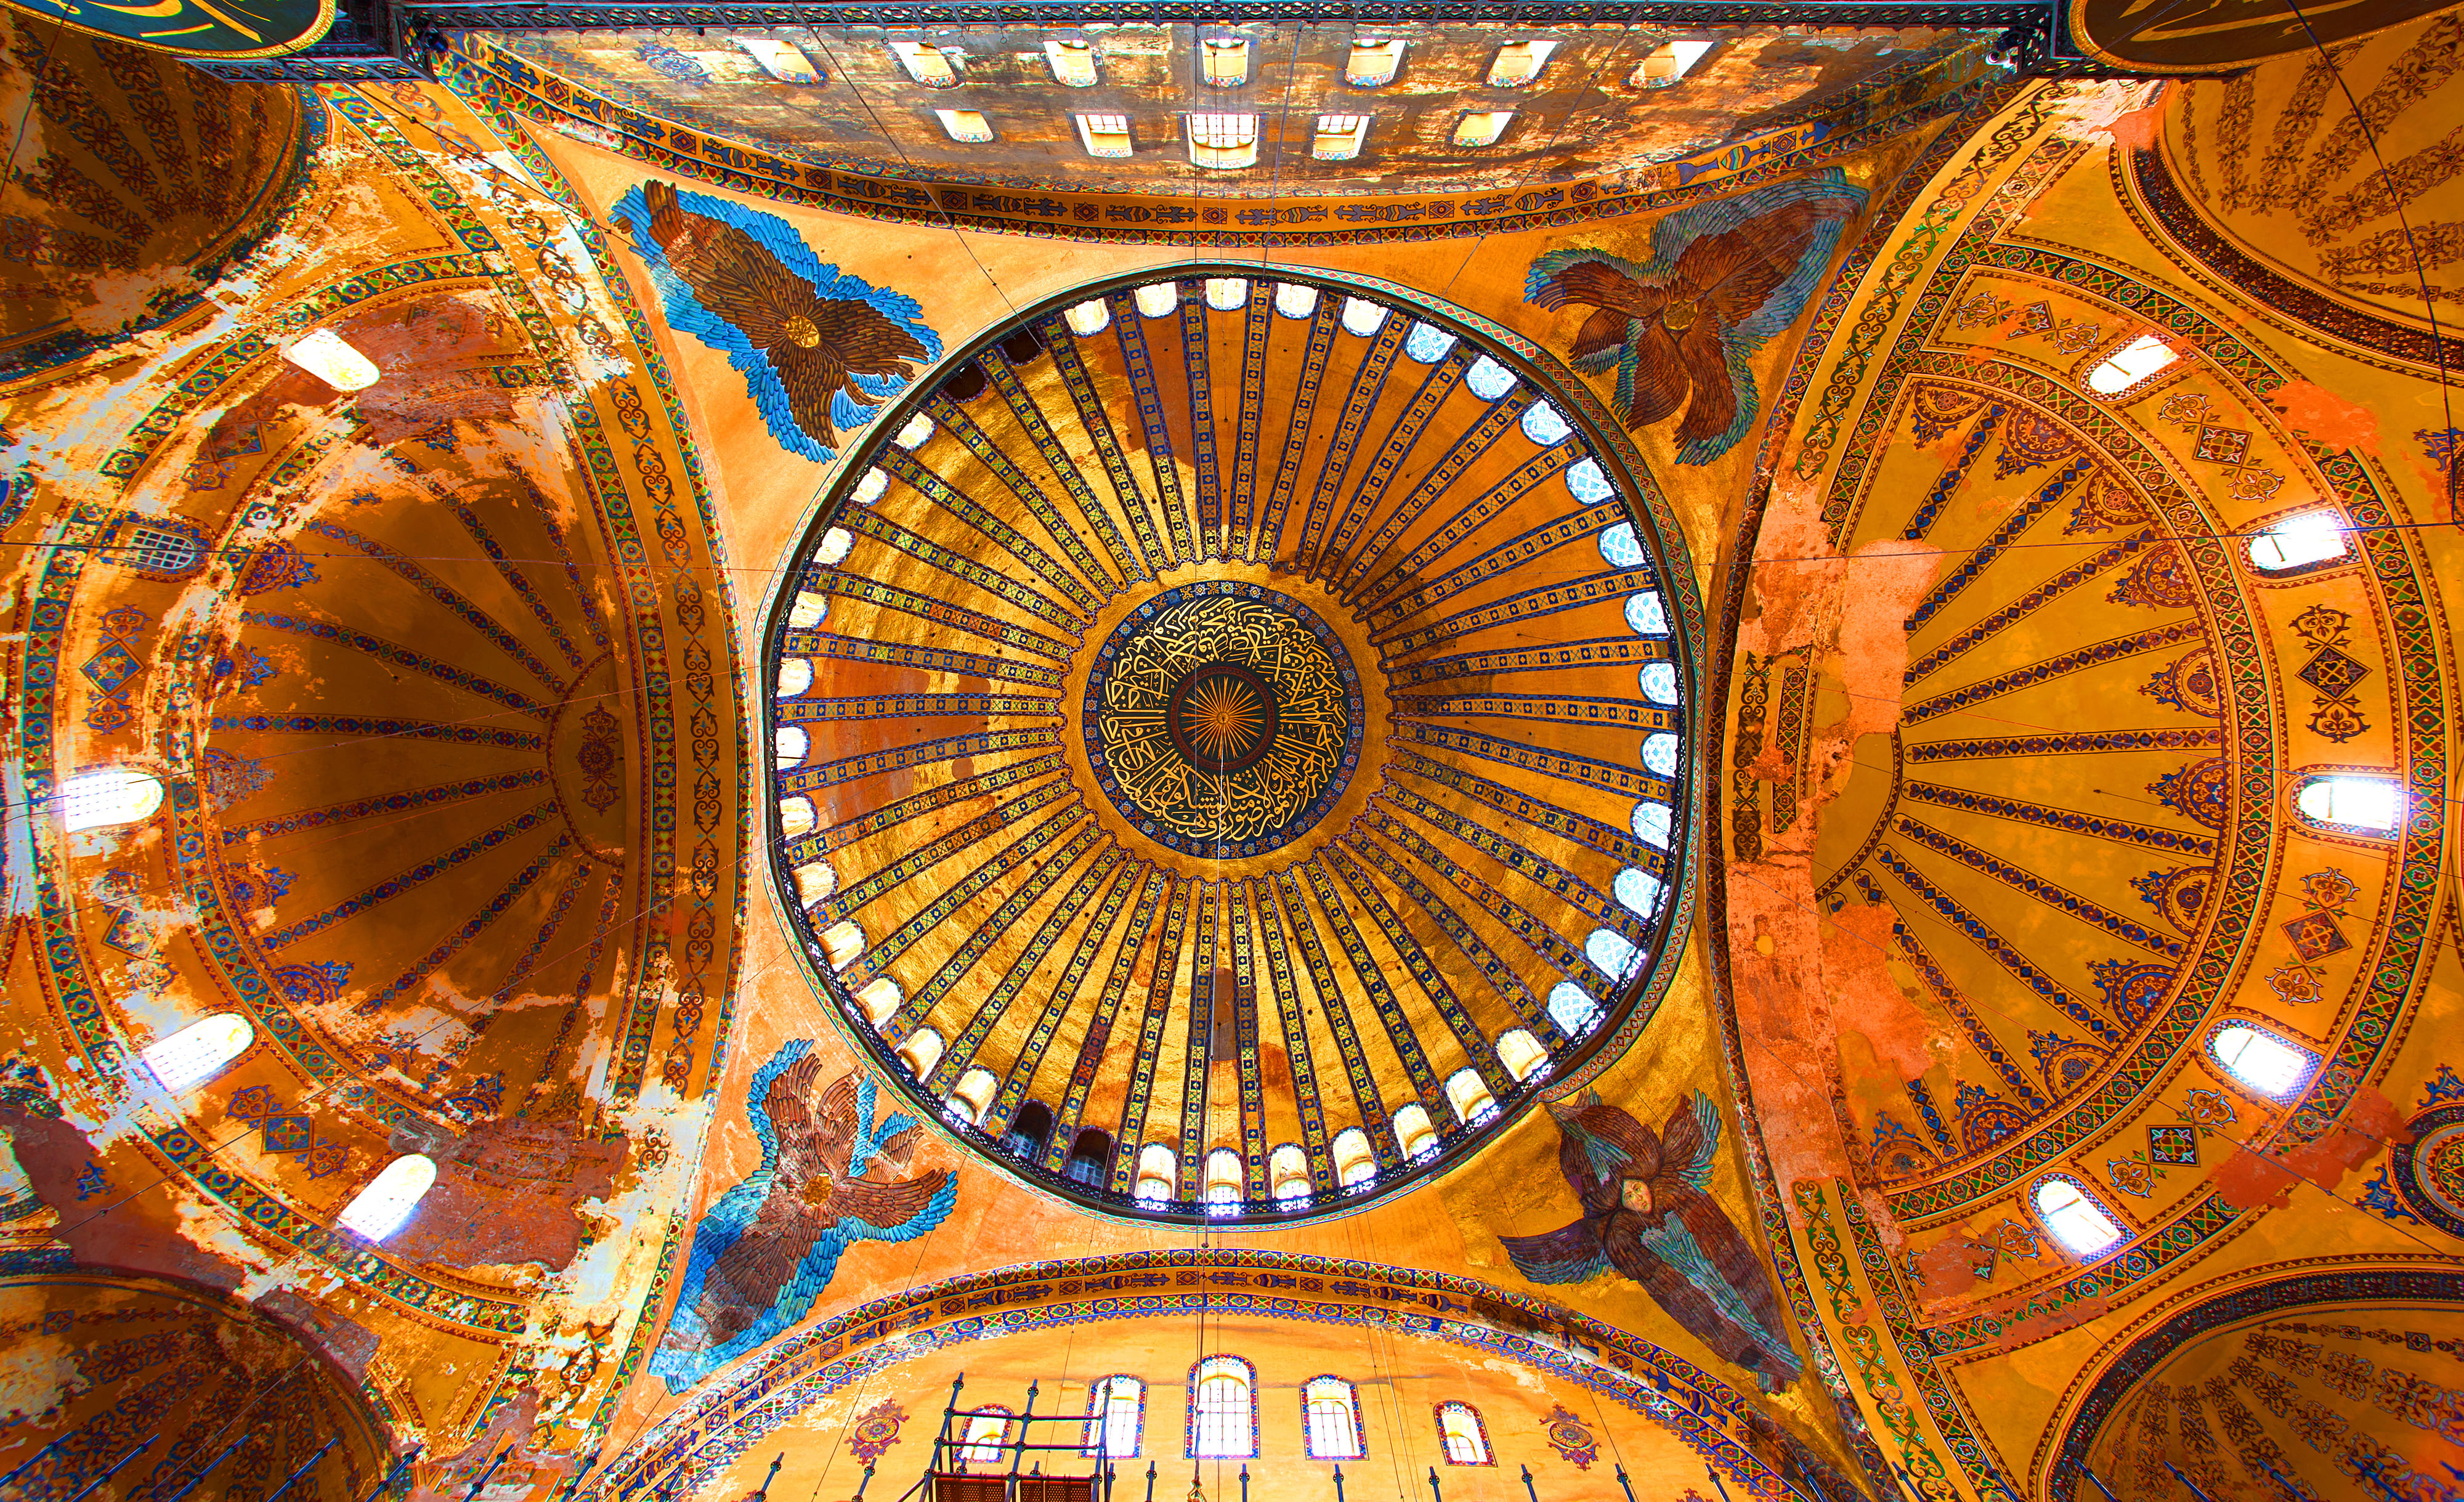                        Hagia Sophia Interior                                                                                                                                                            